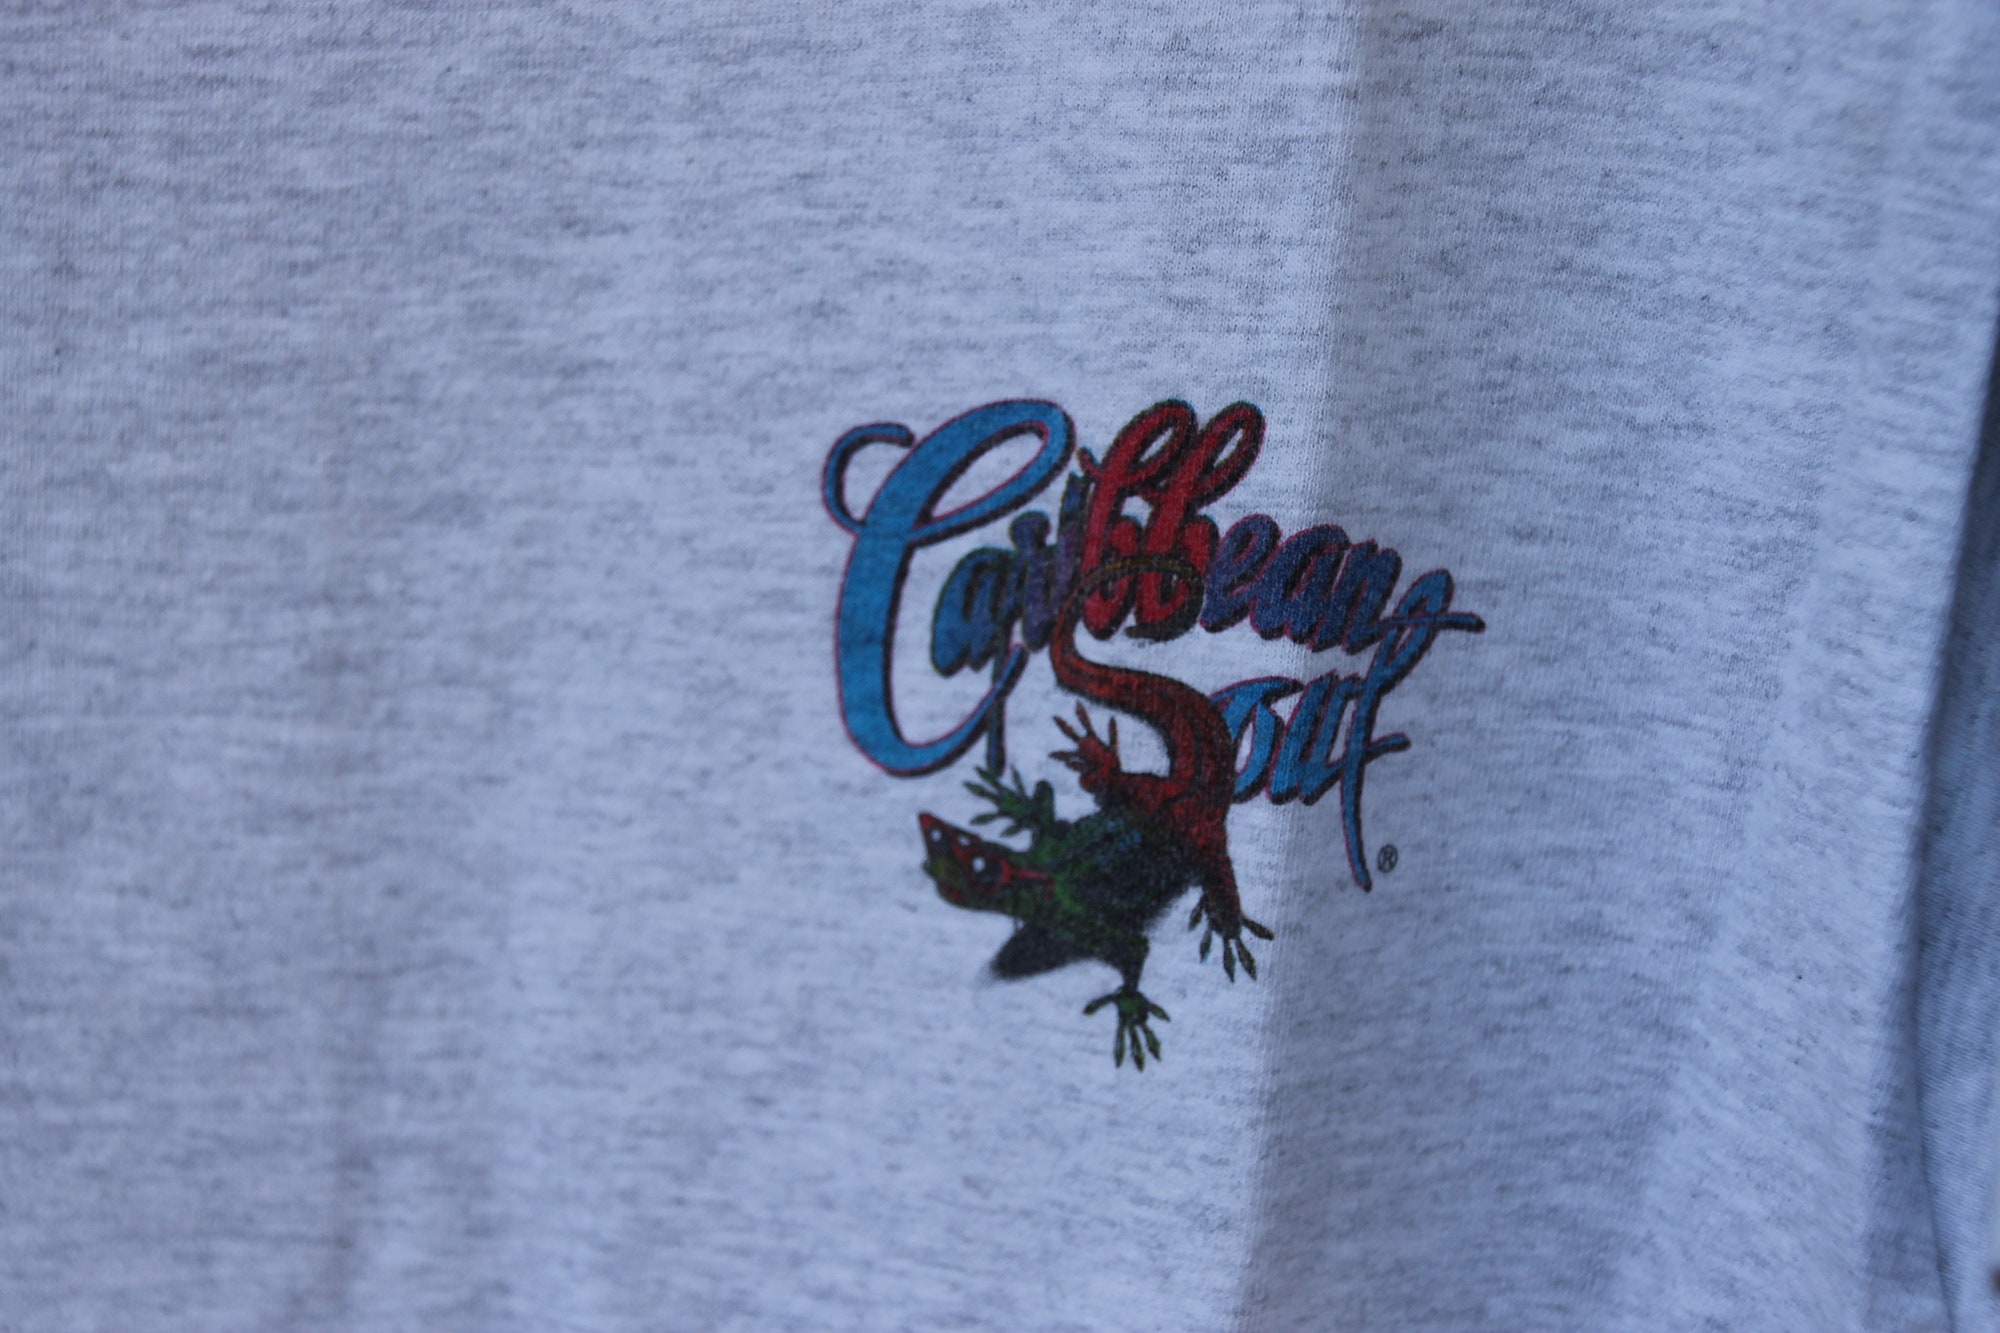 Discover Vintage 1997 Parrot Party Caribbean Soul T-Shirt